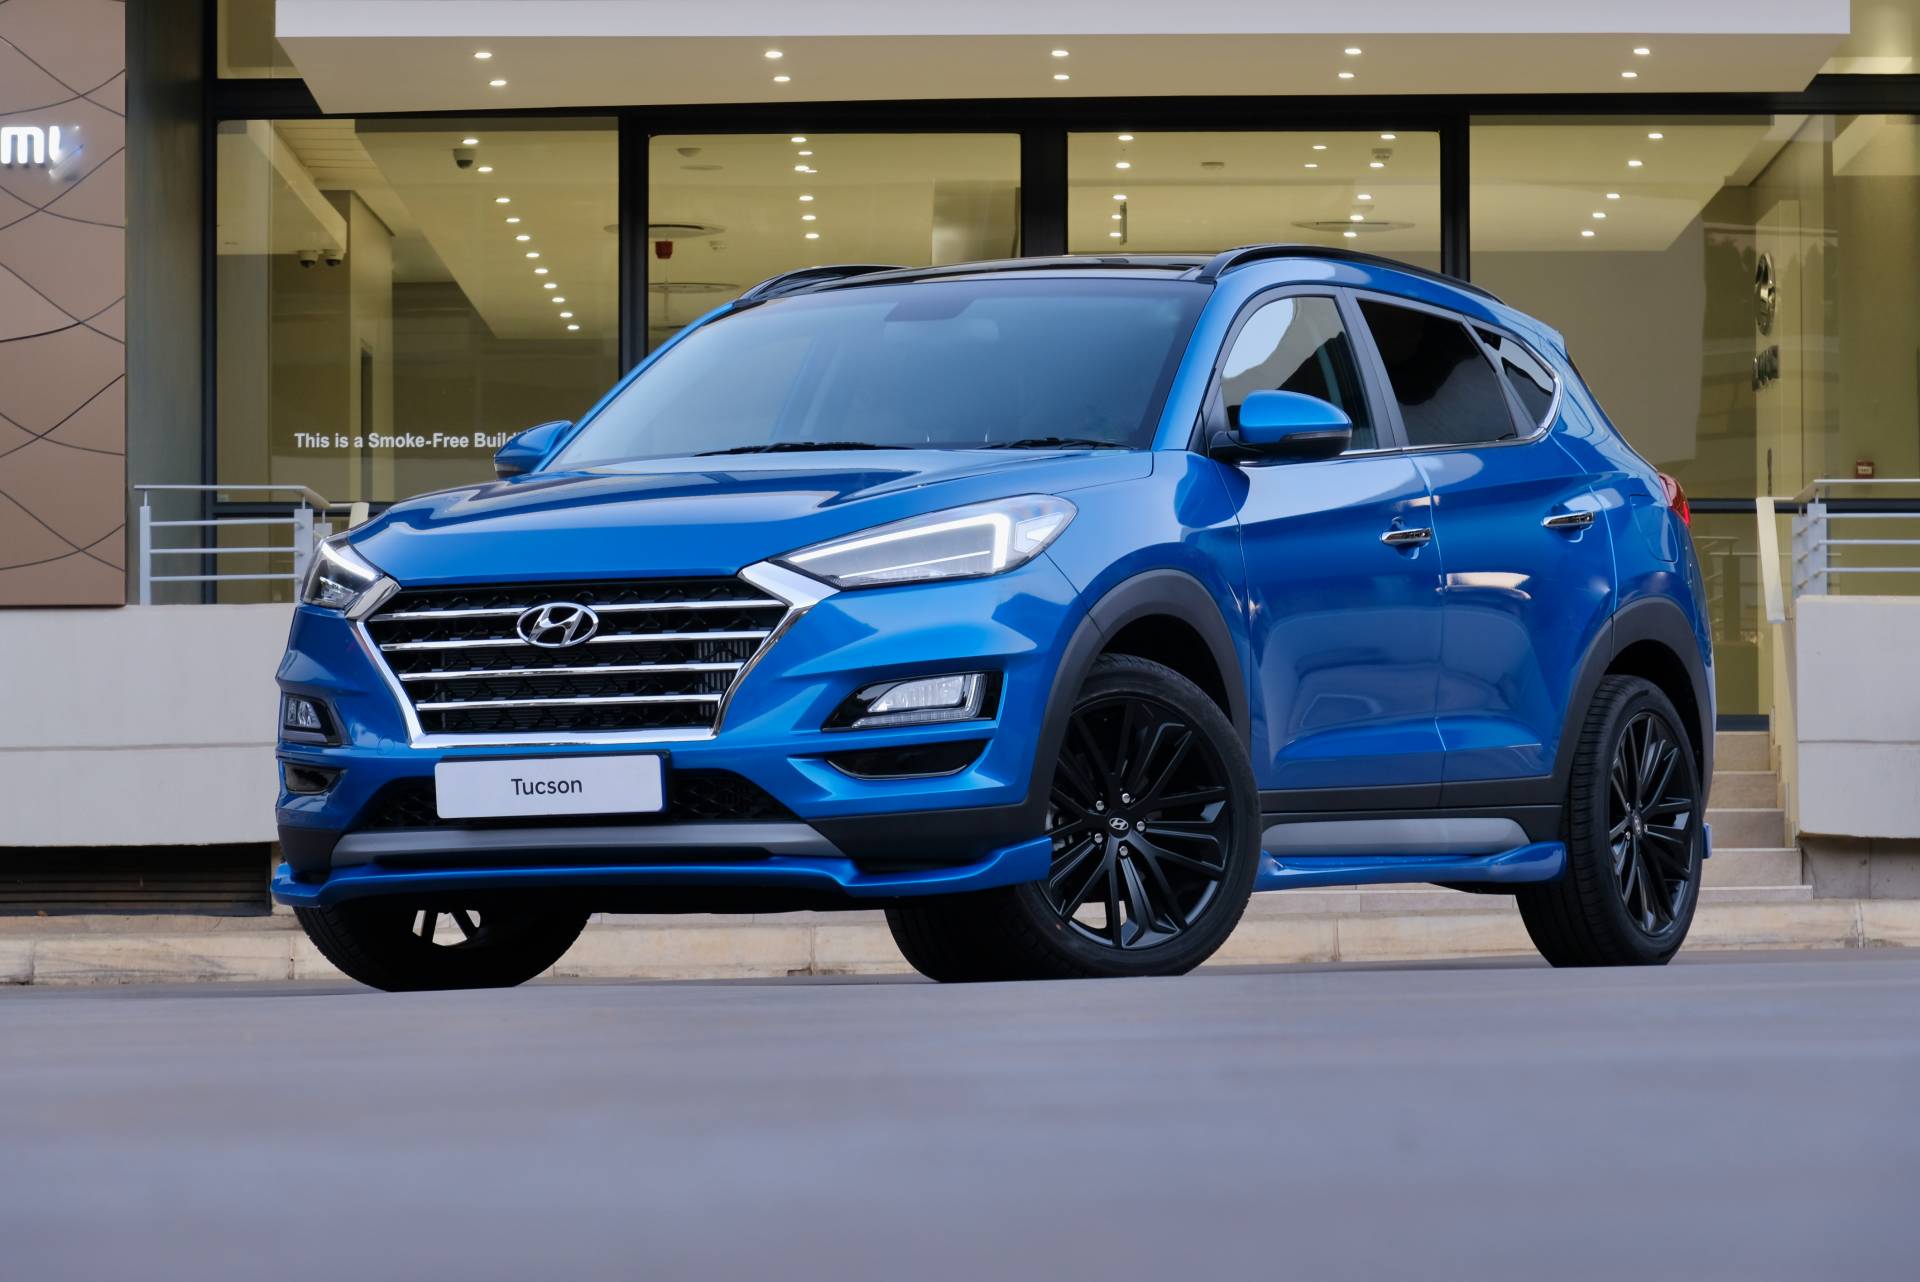 Hyundai Tucson Sport ราคา 1.3 ล้านบาท ในแอฟริกาใต้